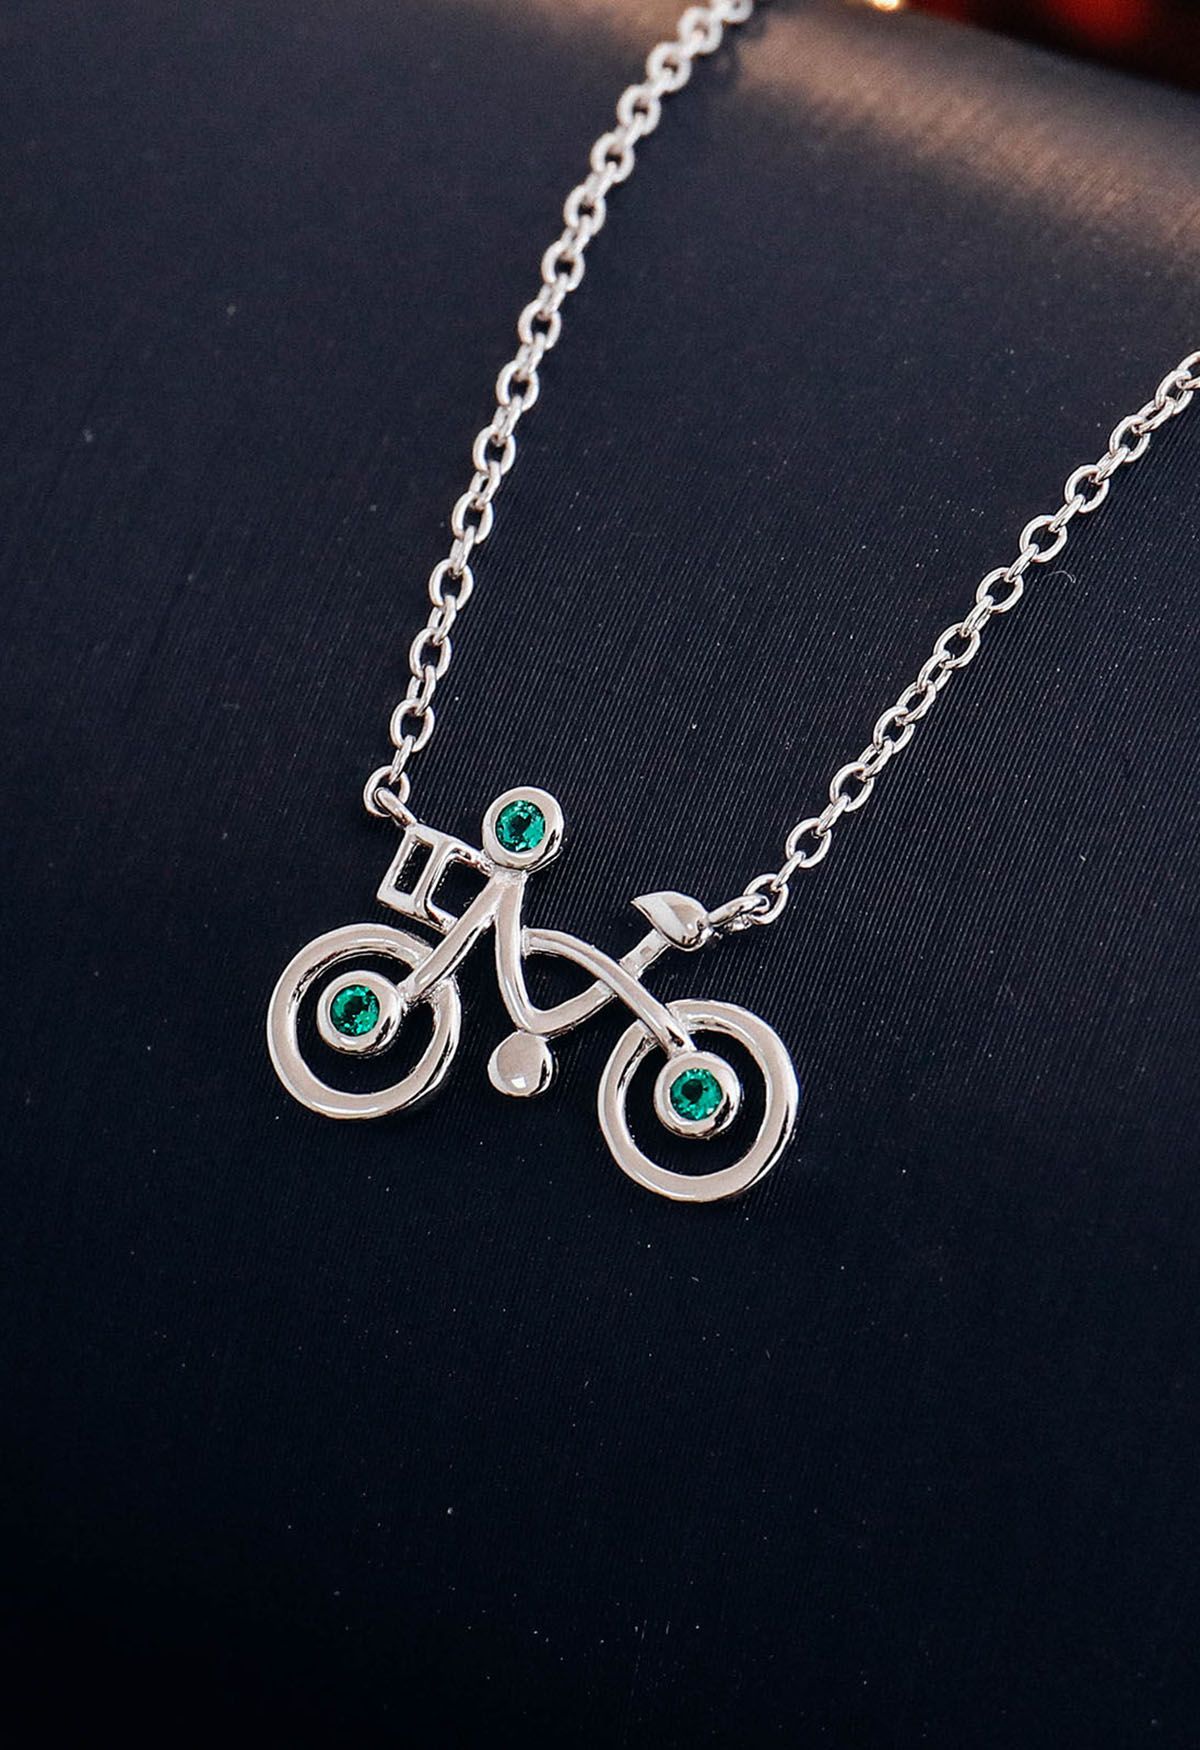 Collar de gemas de esmeralda con forma de bicicleta